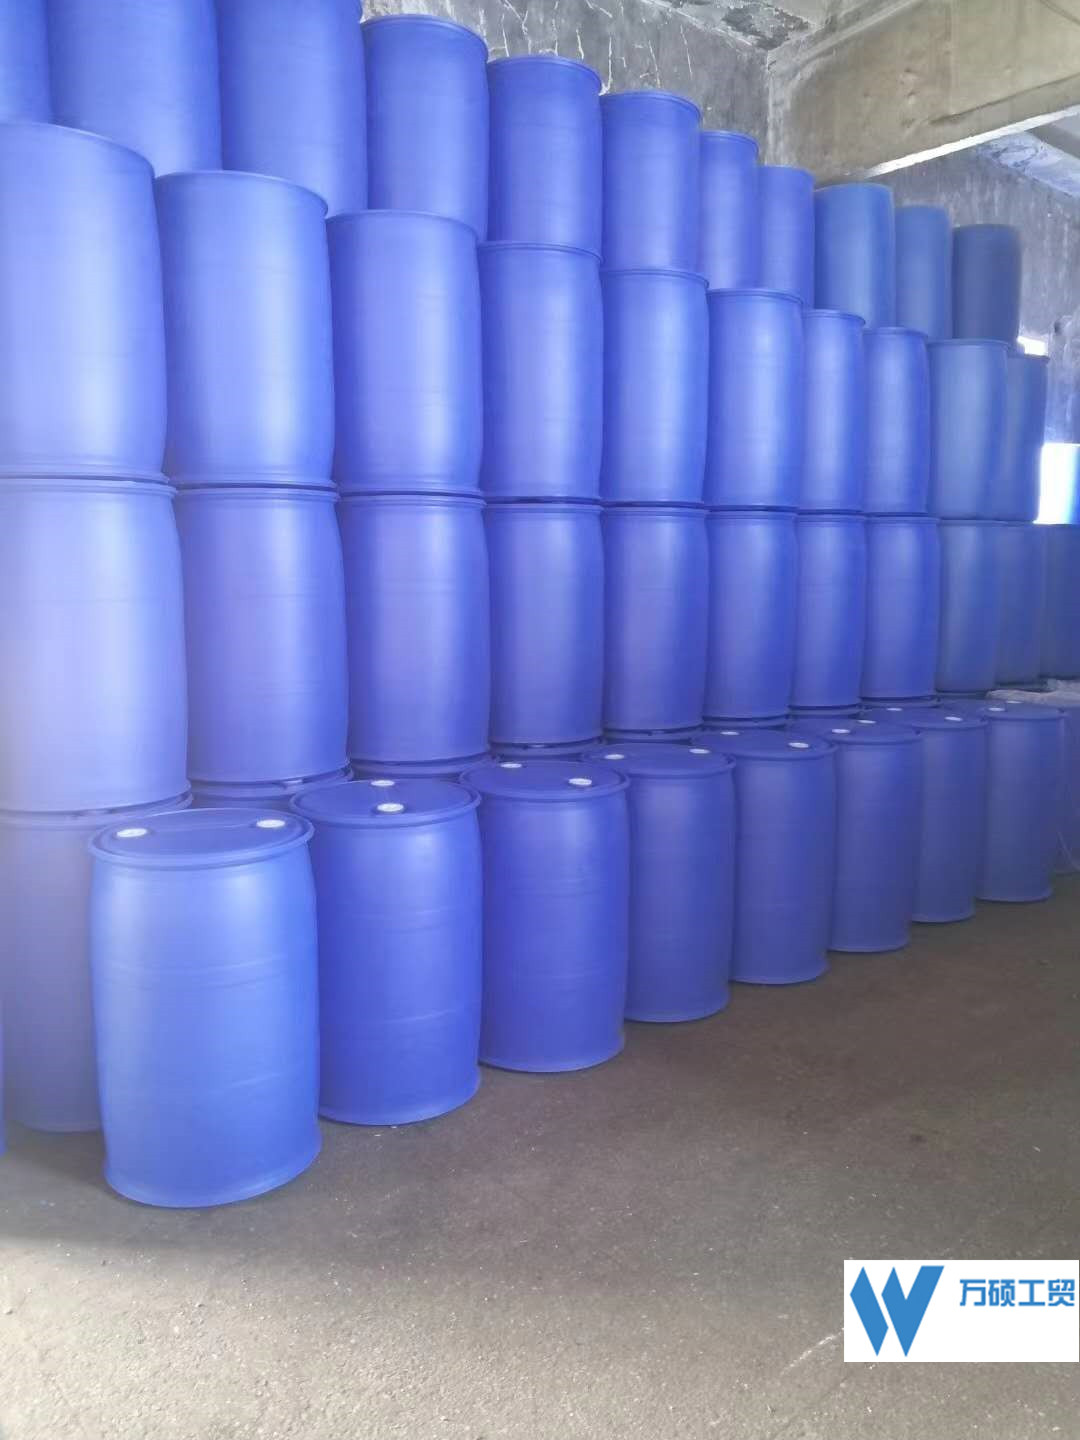 供应150L开口塑料桶供应商_规格型号齐全_160公斤废桶